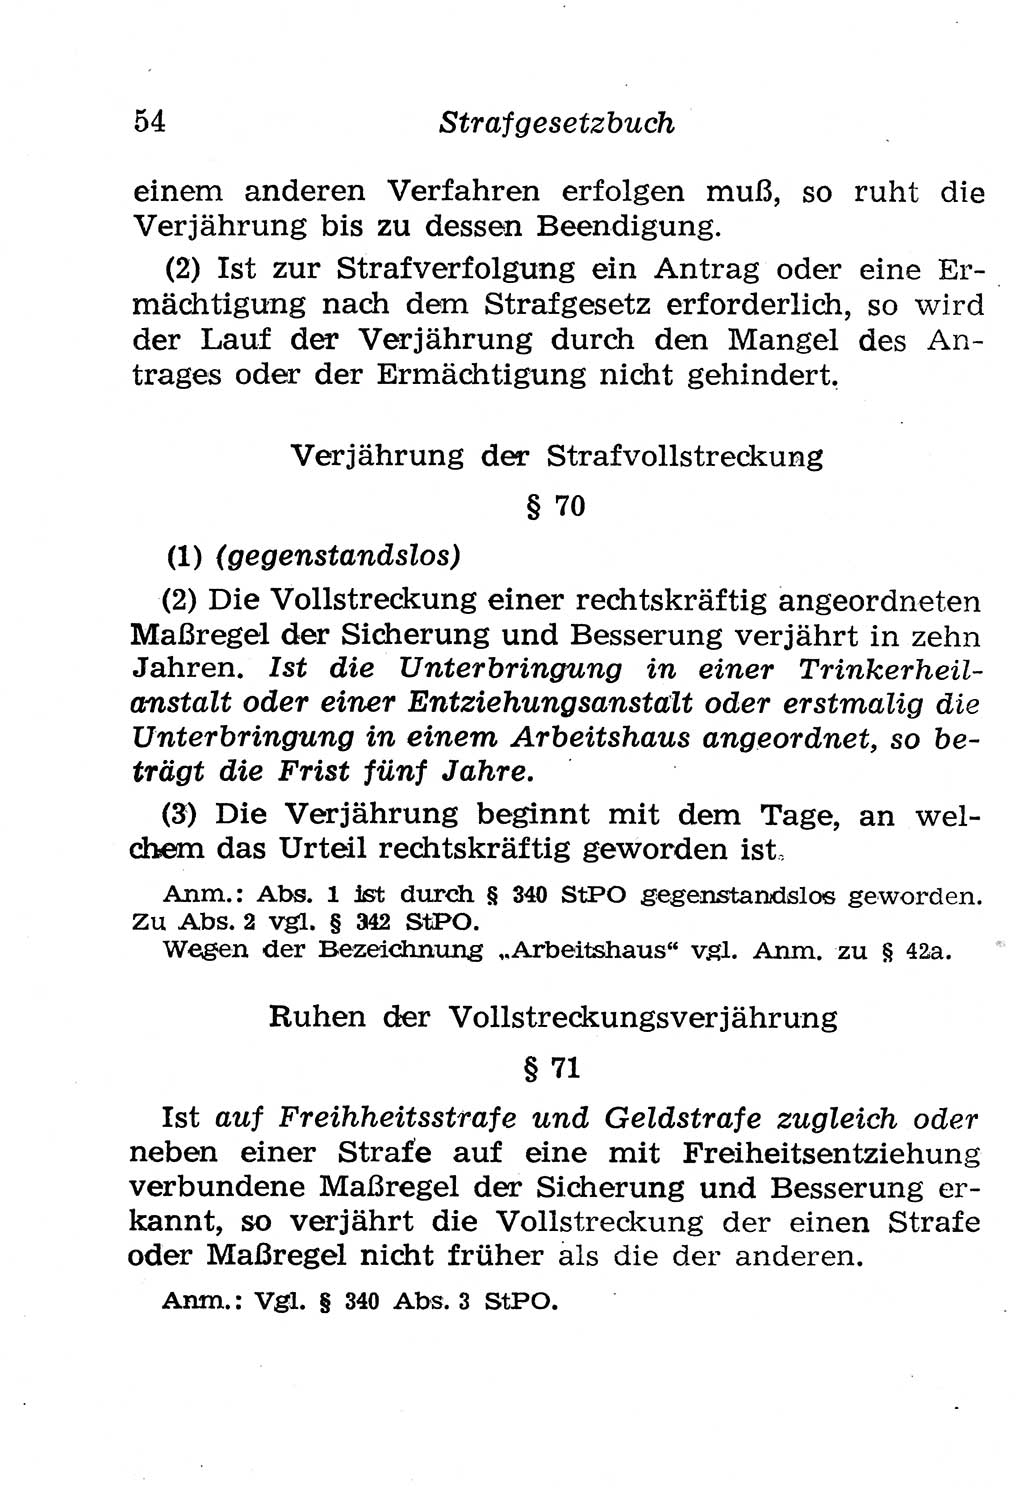 Strafgesetzbuch (StGB) und andere Strafgesetze [Deutsche Demokratische Republik (DDR)] 1958, Seite 54 (StGB Strafges. DDR 1958, S. 54)